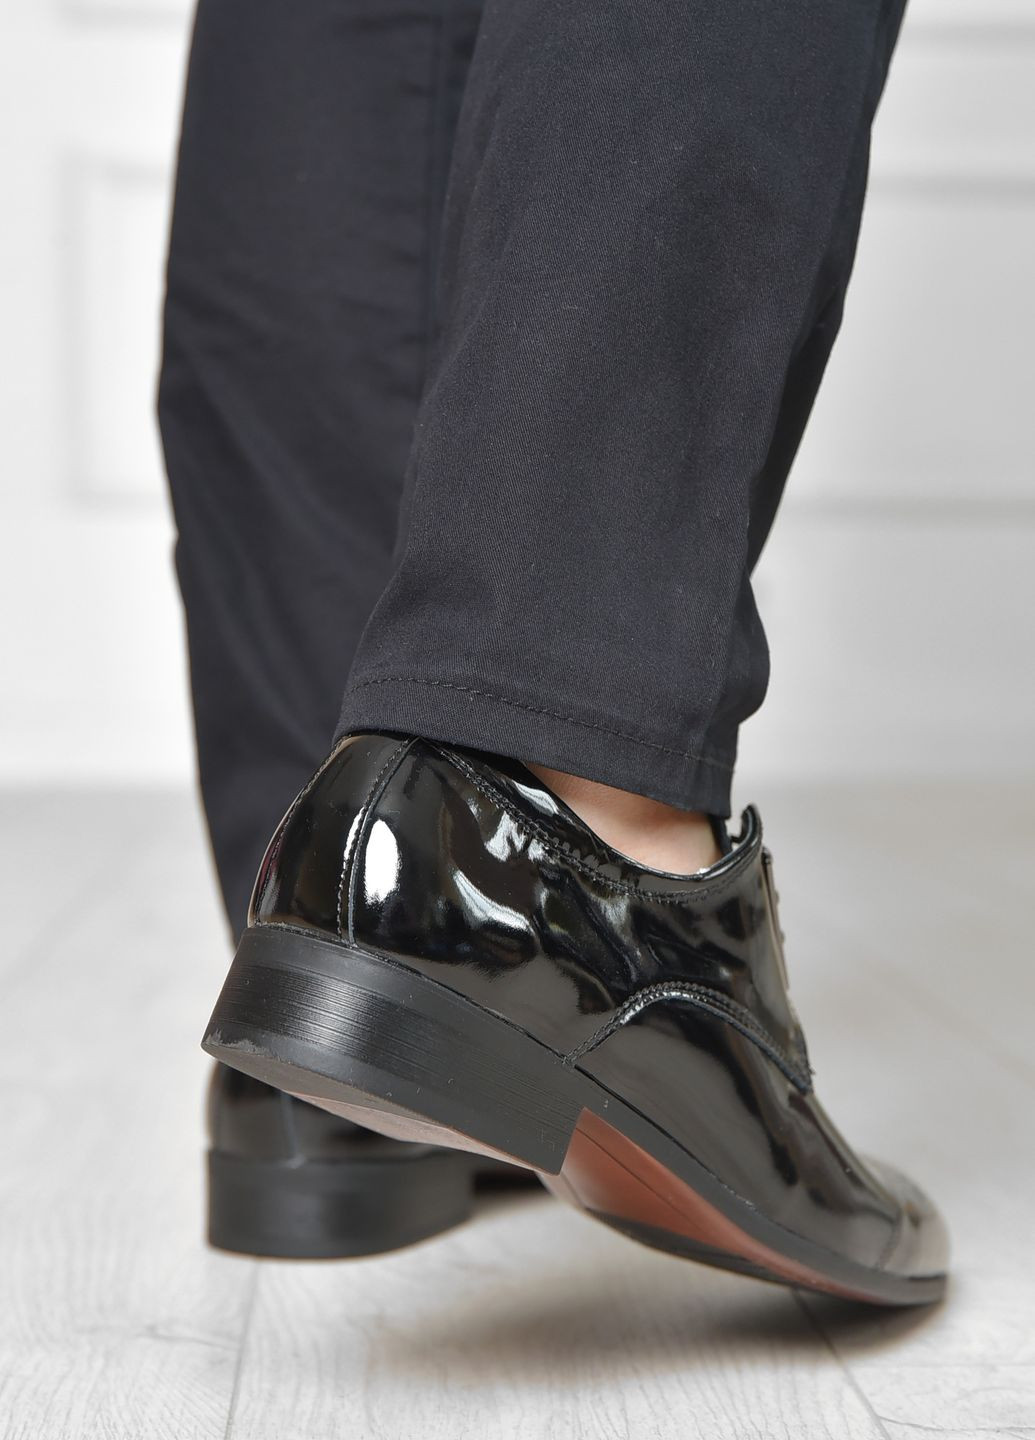 Черные классические туфли мужские черного цвета Let's Shop на шнурках